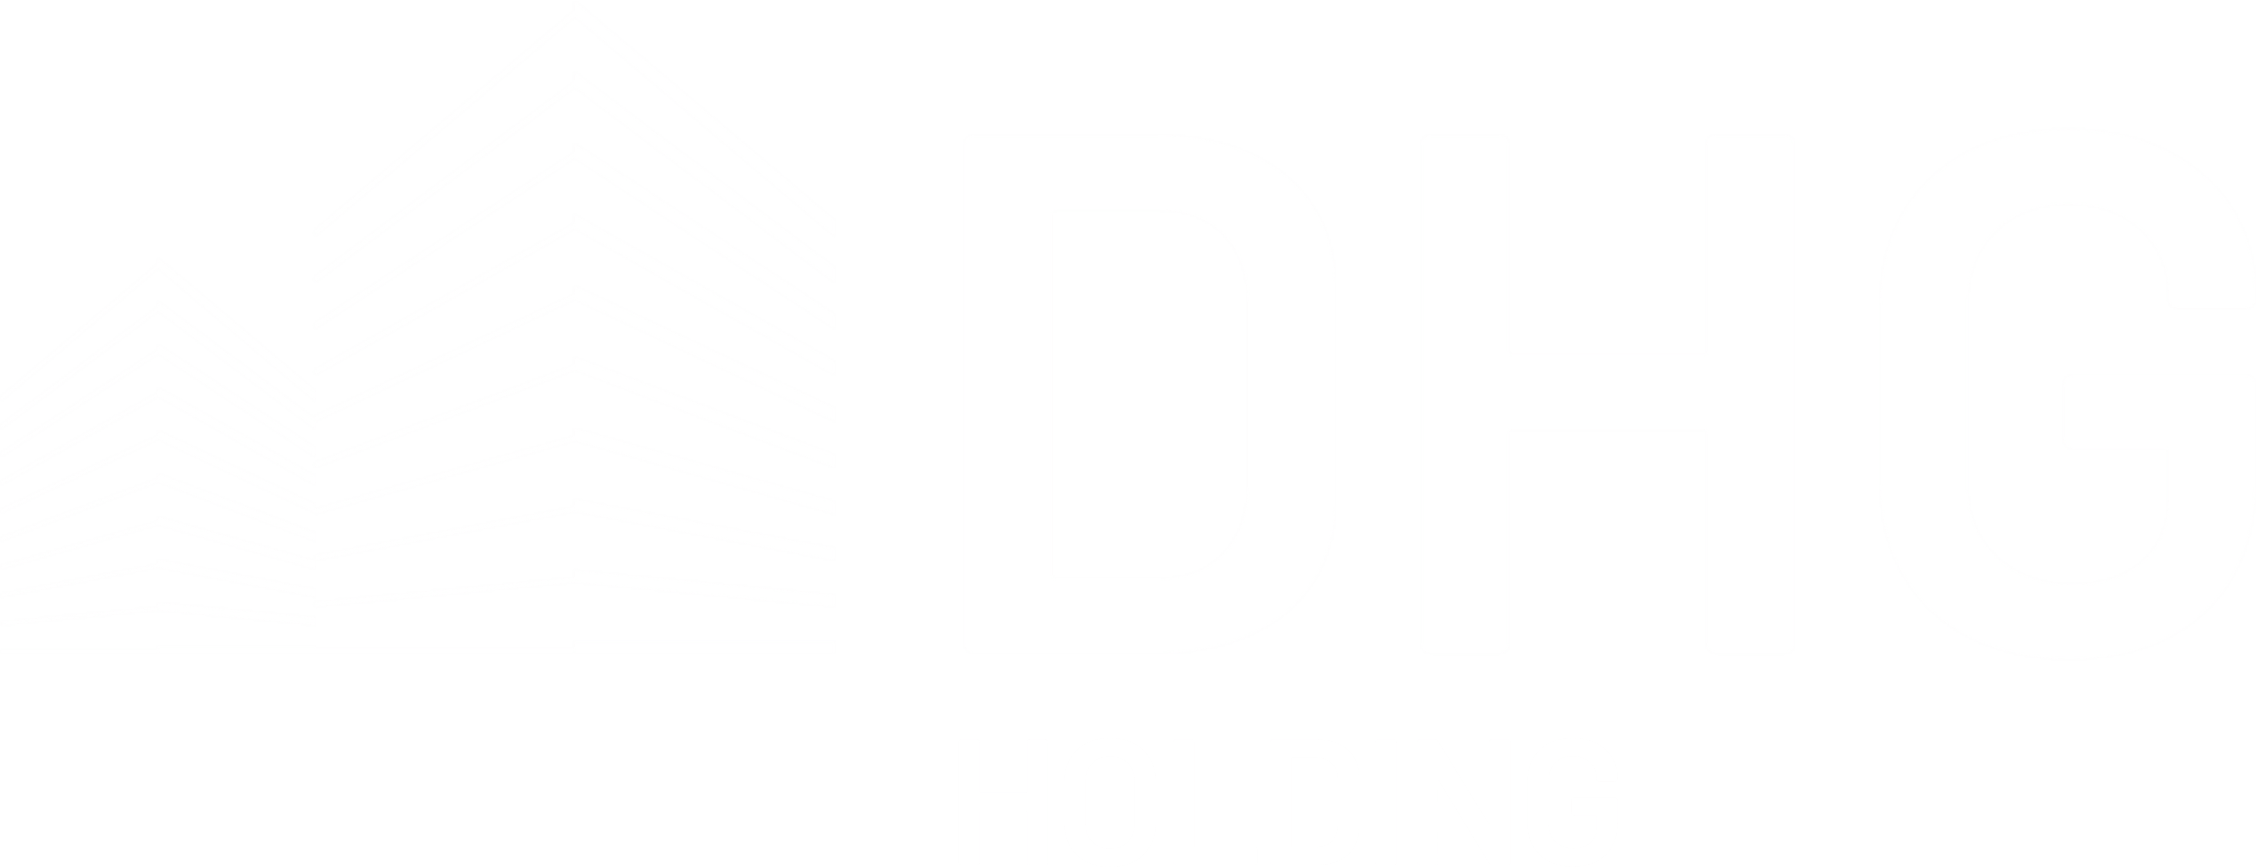 Logo dhg holding white